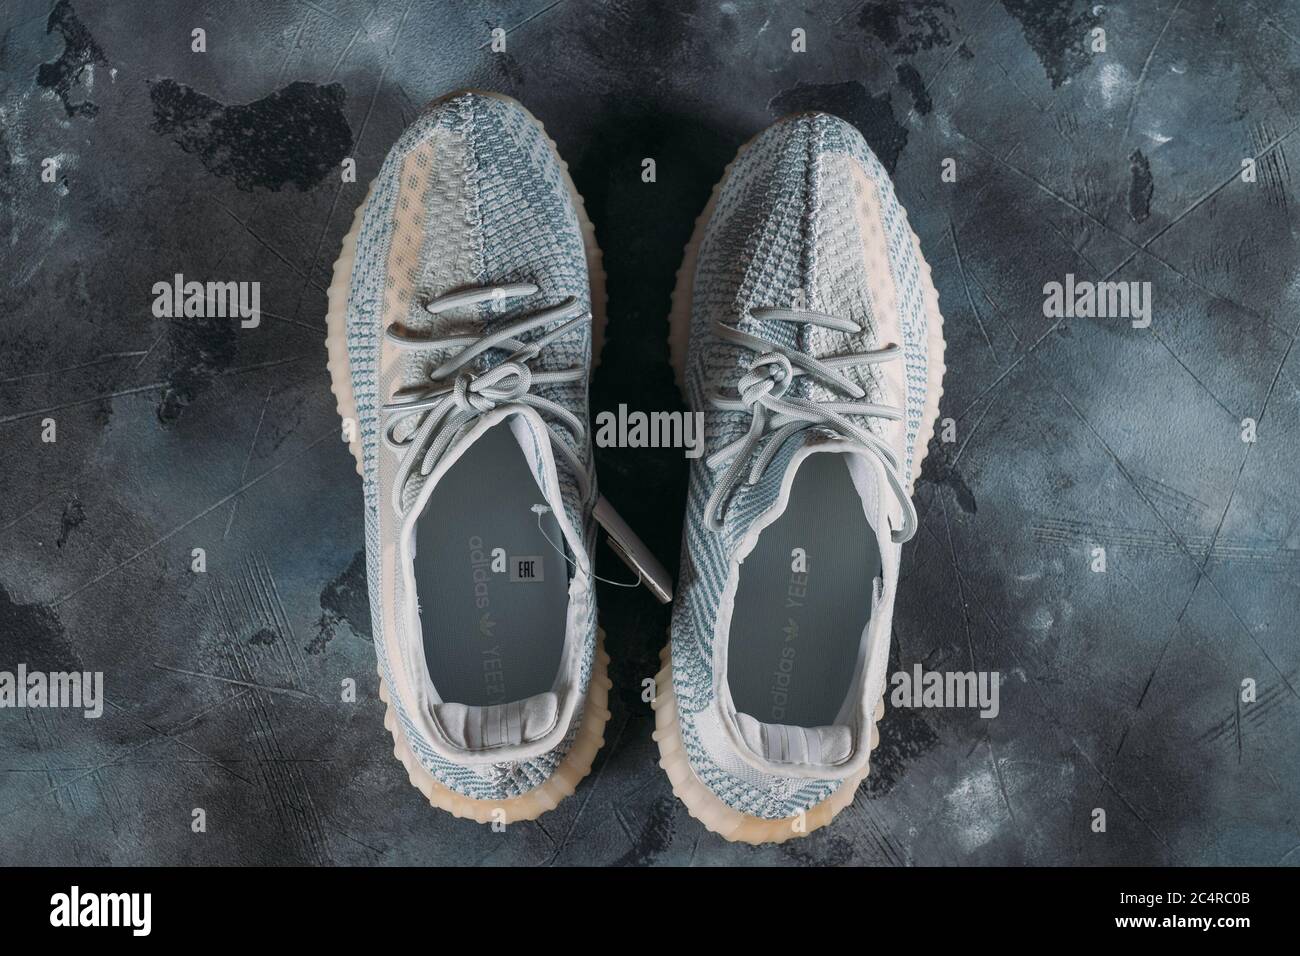 Moscú, Rusia - Junio 2020 : Adidas Yeezy Boost 350 V2 Cloud White - famosa  Colección limitada de moda Sneakers por Kanye West y Adidas Collaboration,  zapatos deportivos de moda Fotografía de stock - Alamy